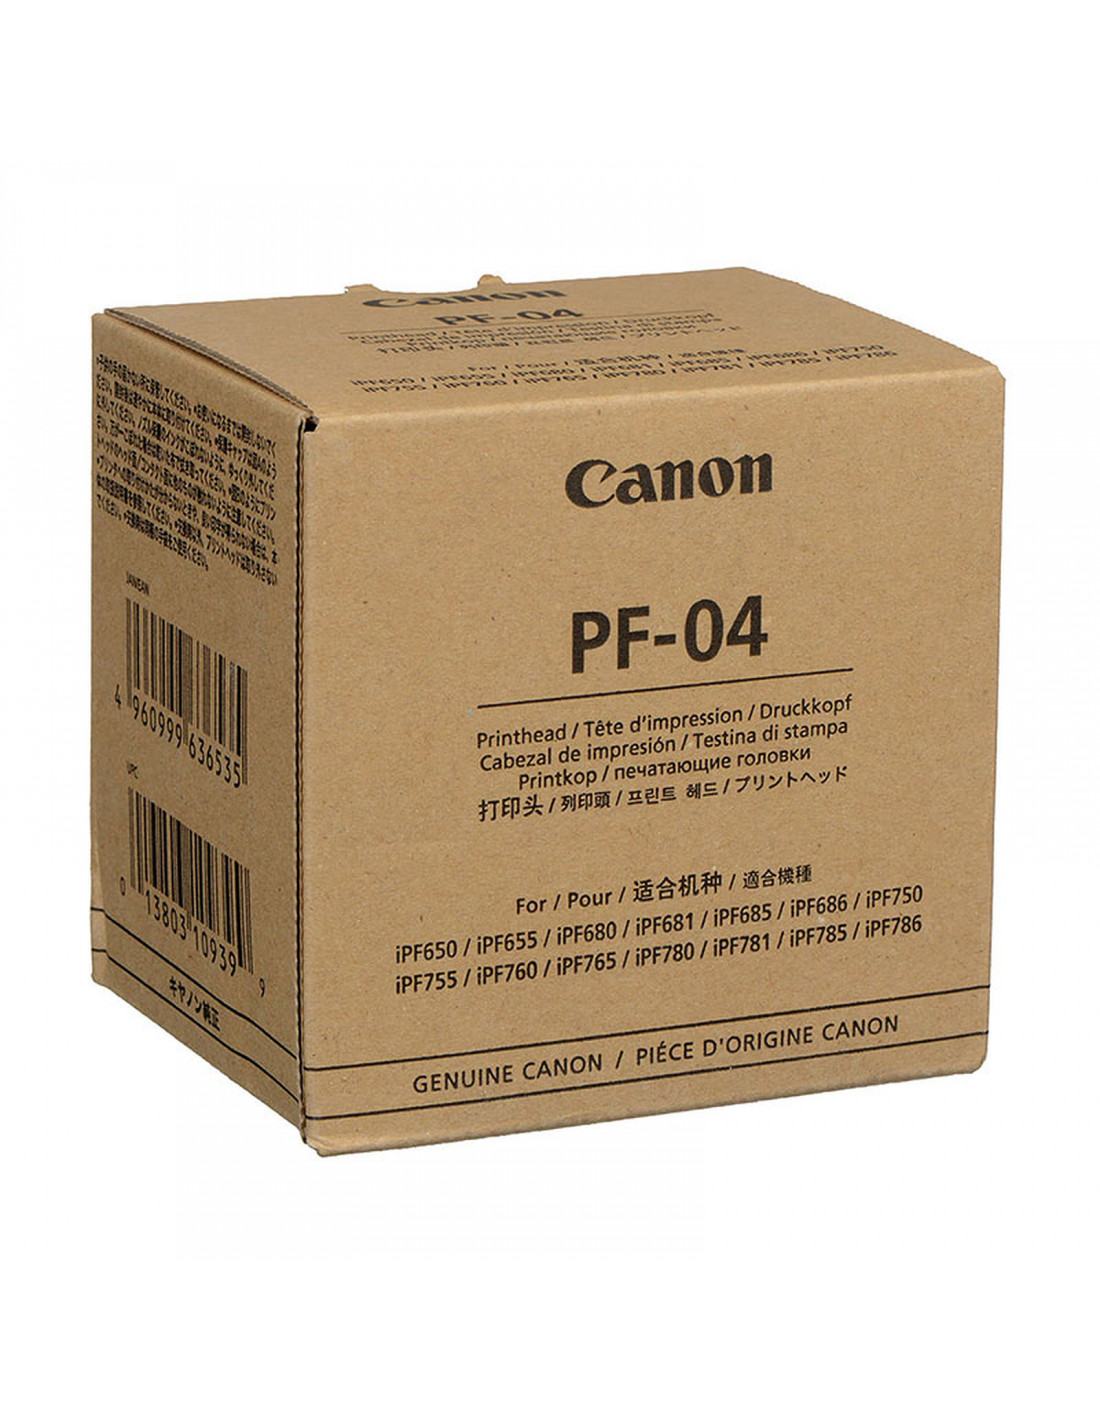 Achetez votre tête d'impression originale Canon PF 04 - 3630B001AA